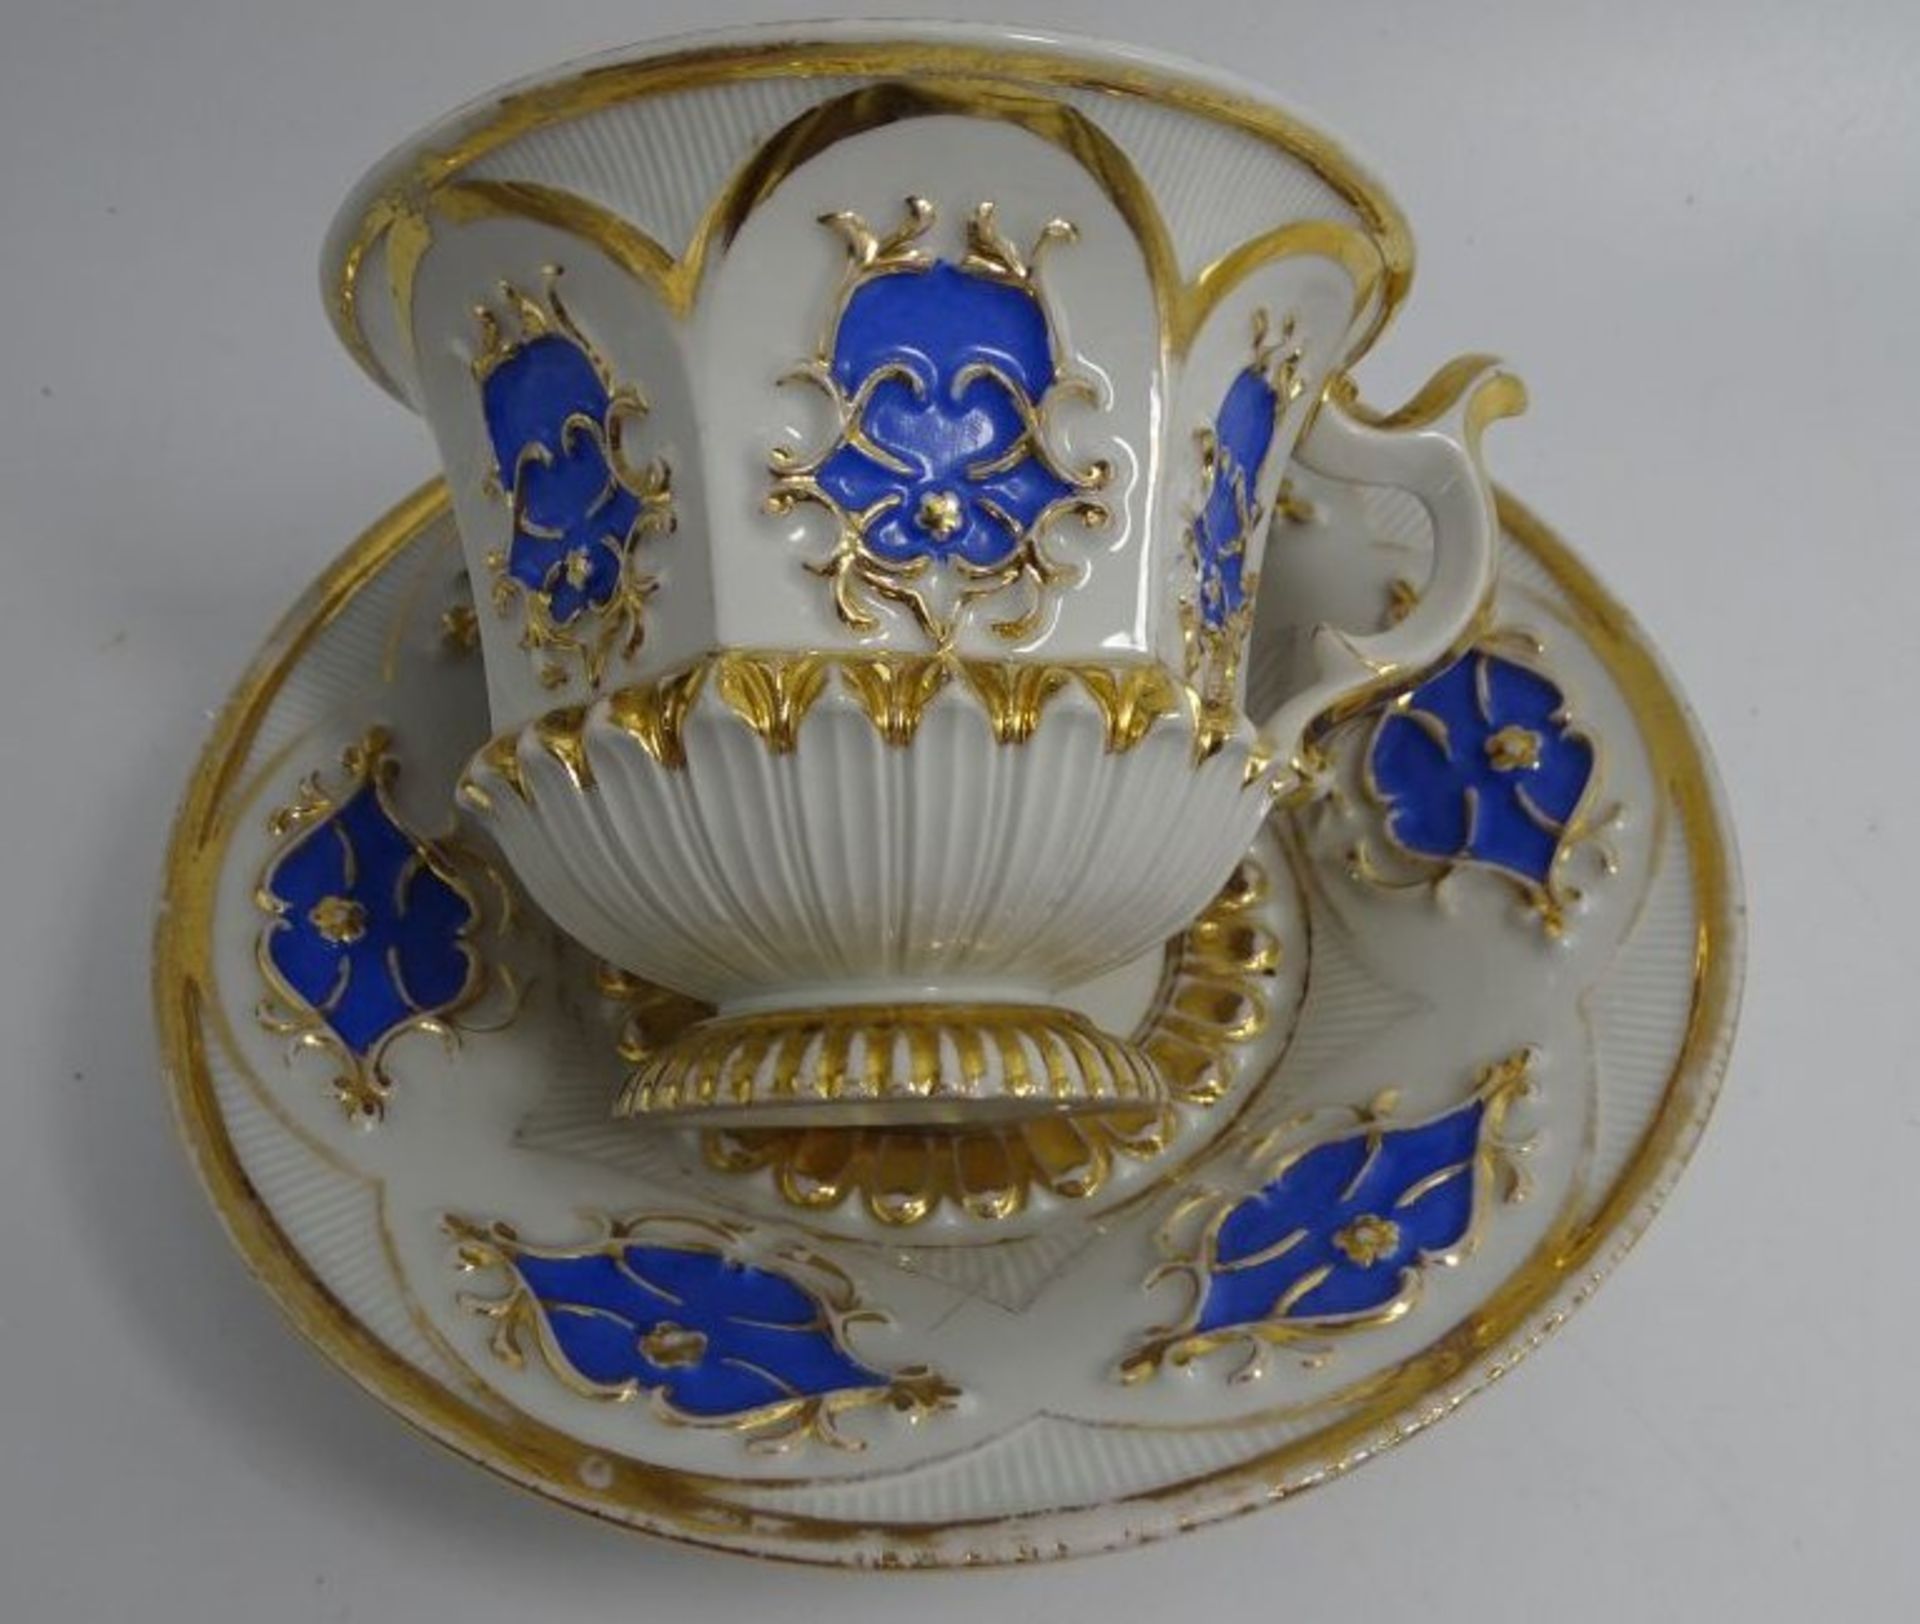 gr. Prunktasse "Meissen" blaue Ornamente mit Goldstaffage, berieben, 1.Wahl um 1860 - Image 3 of 4